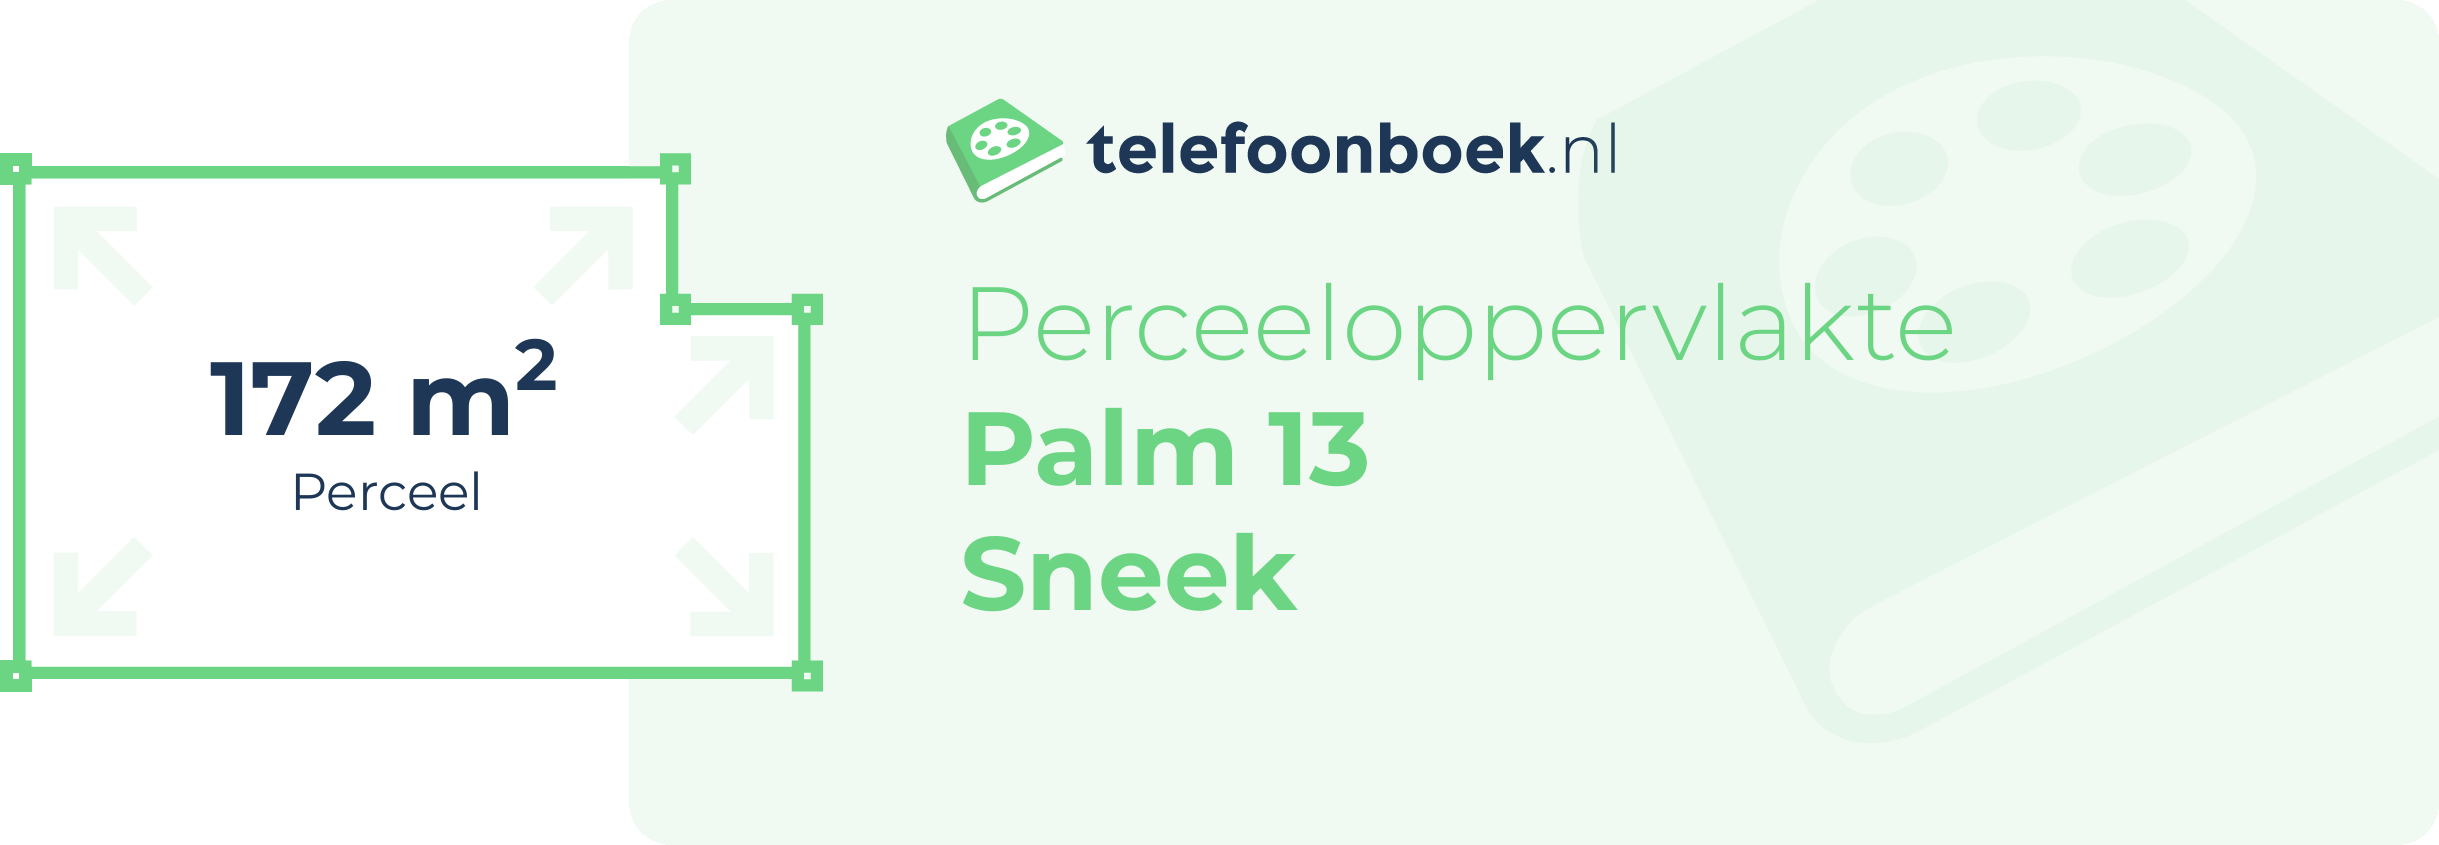 Perceeloppervlakte Palm 13 Sneek